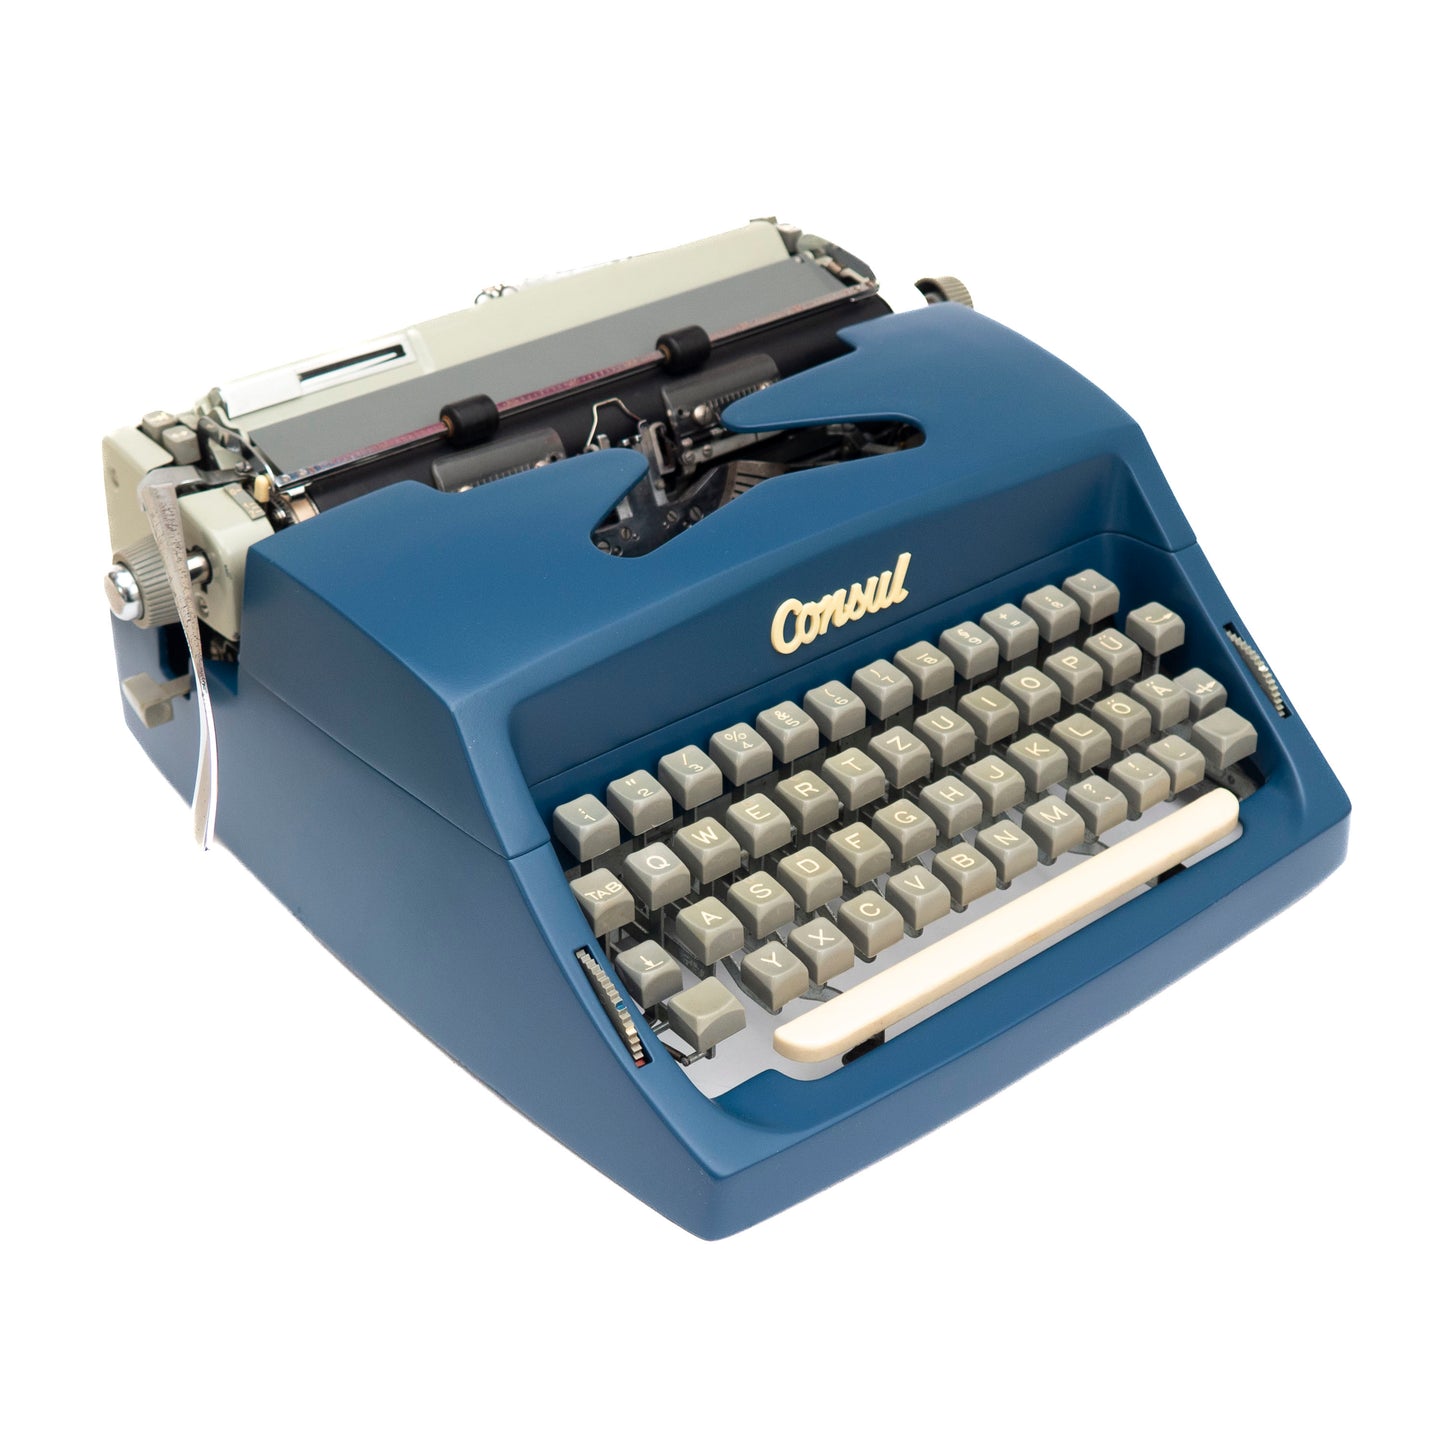 Consul Typewriter Dark Blue